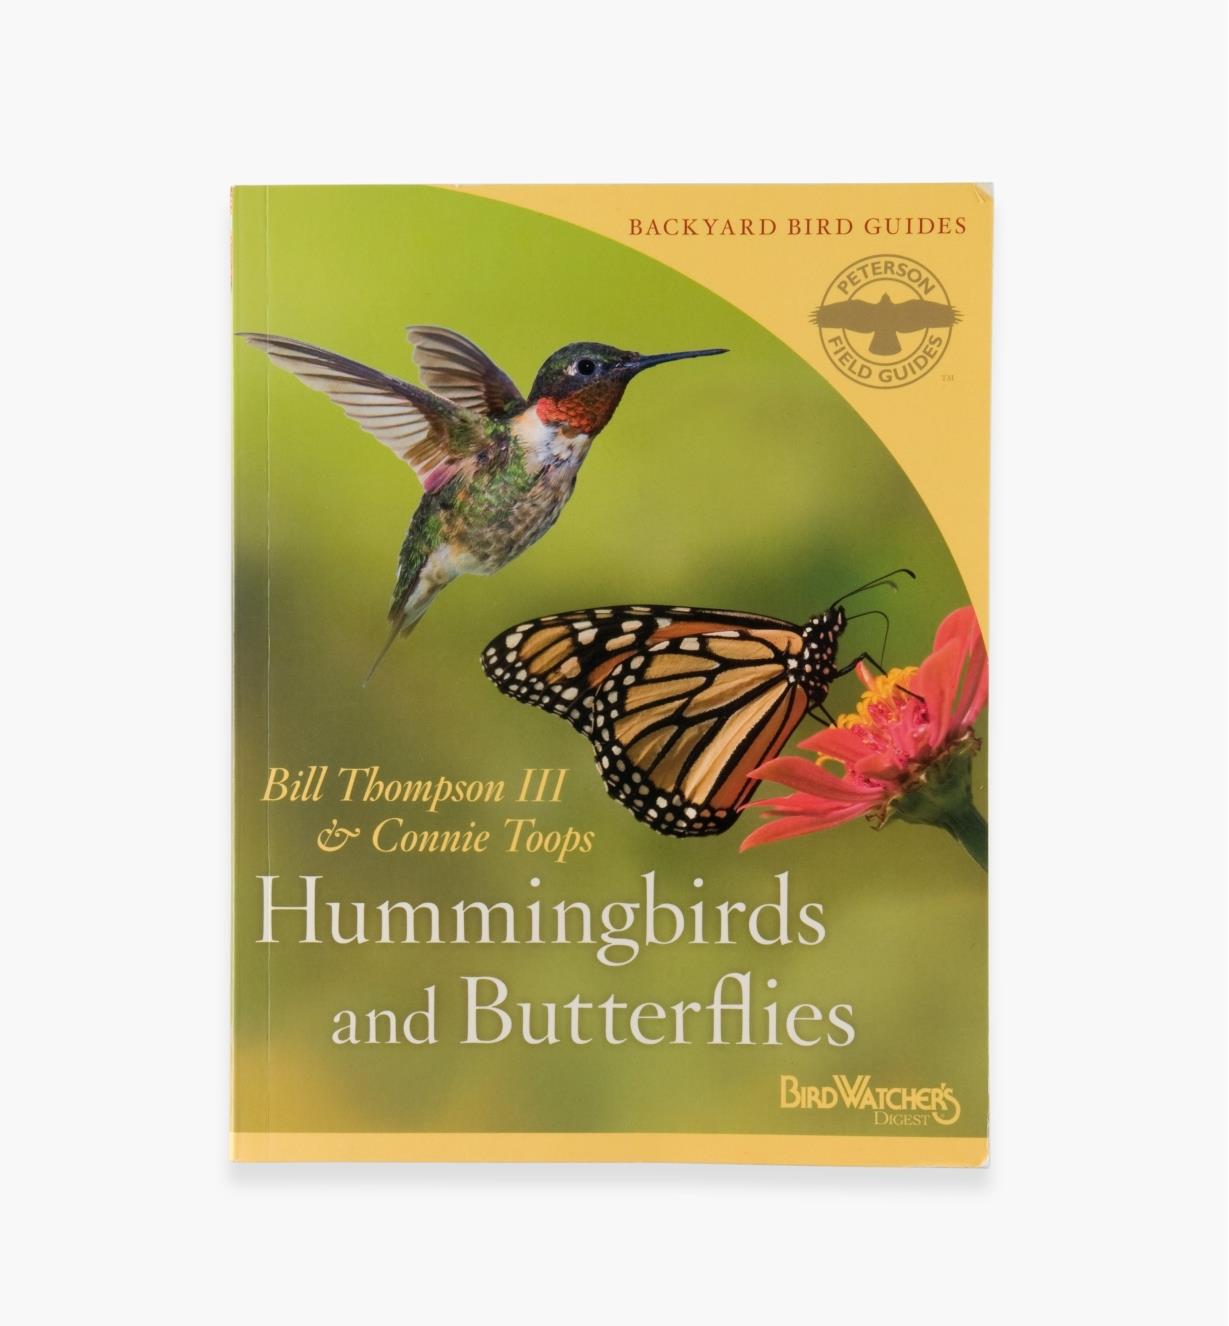 LA193 - Hummingbirds and Butterflies